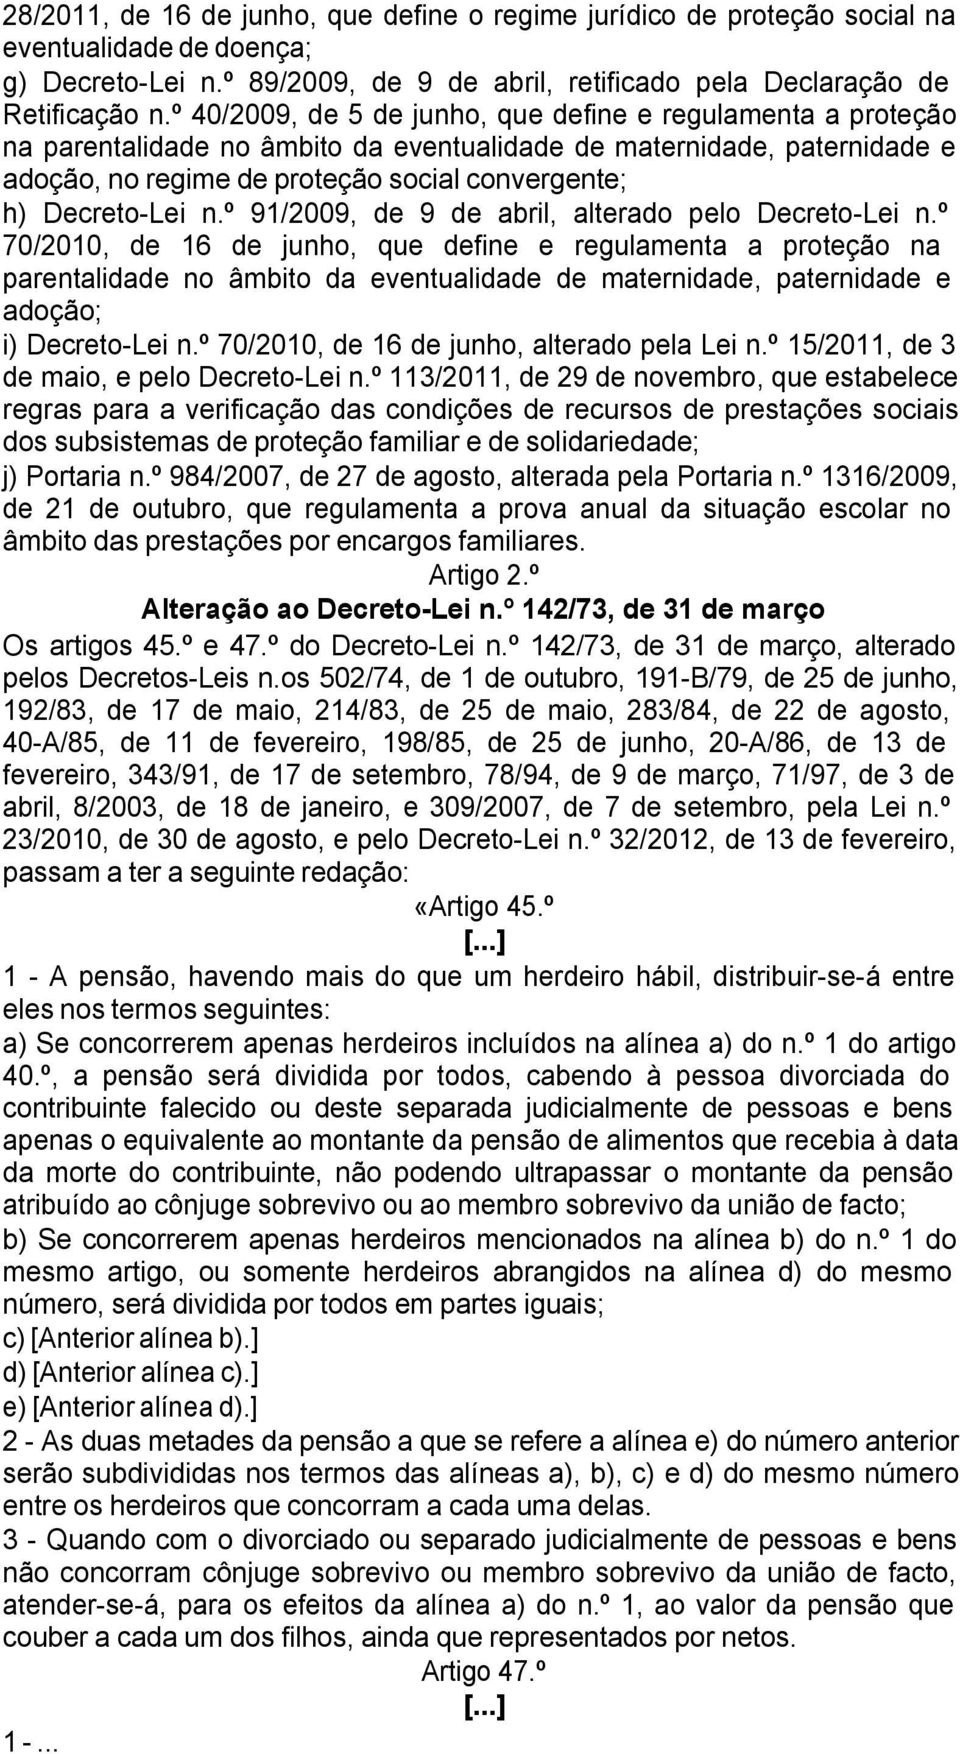 Decreto-Lei n.º 91/2009, de 9 de abril, alterado pelo Decreto-Lei n.